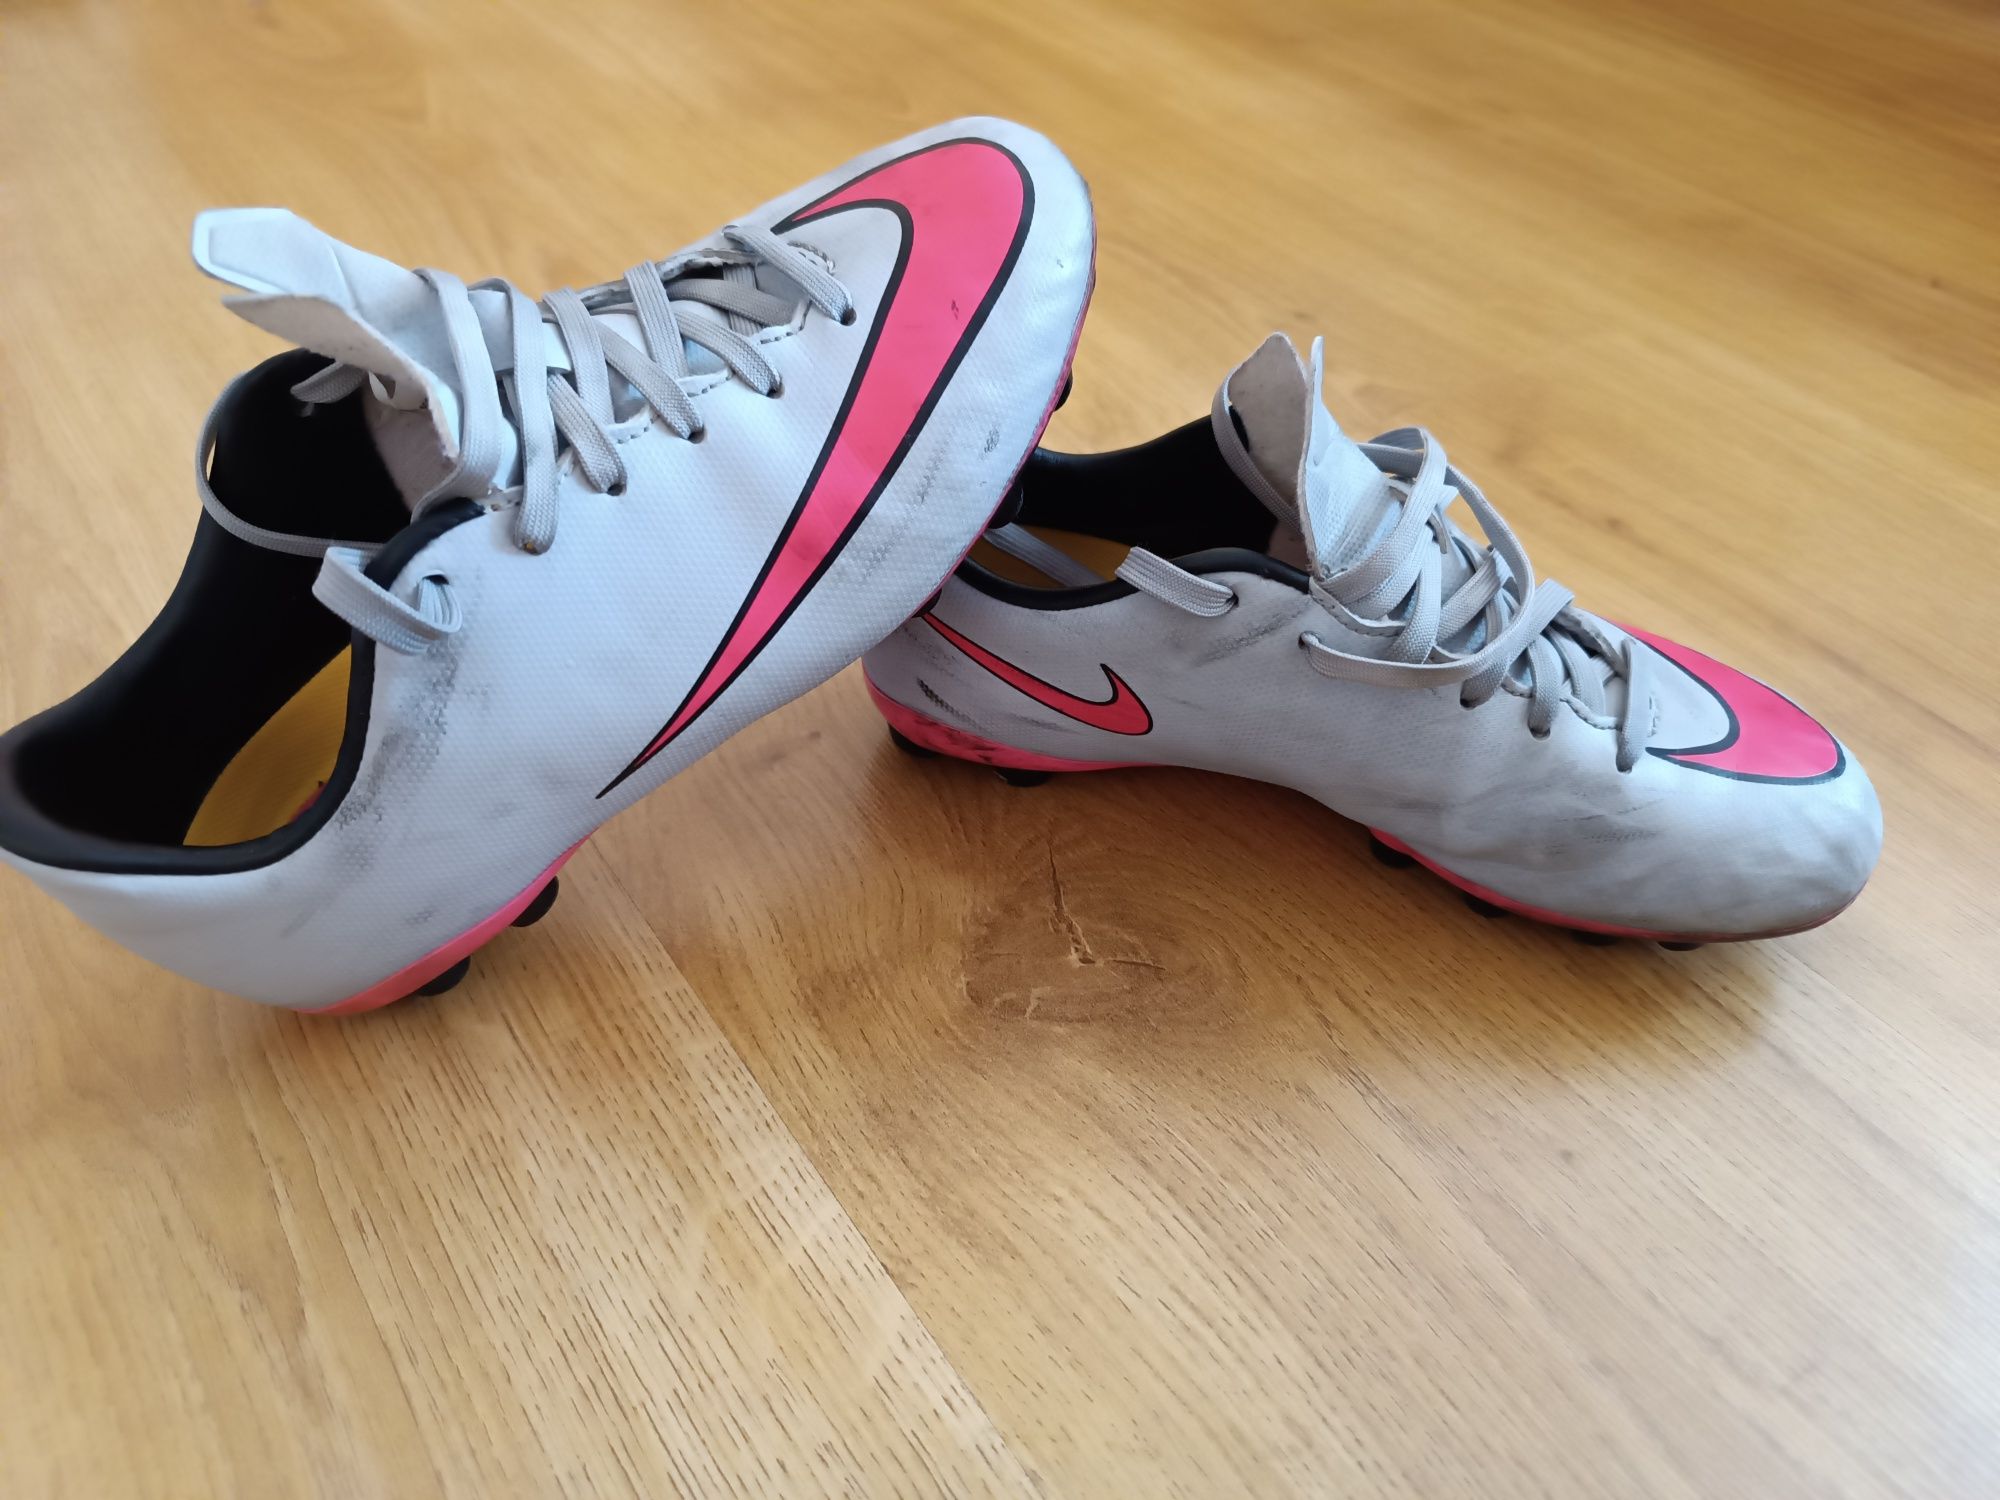 Czaderskie Korki Nike Mercurial 33 buty do piłki nożnej używane jeden